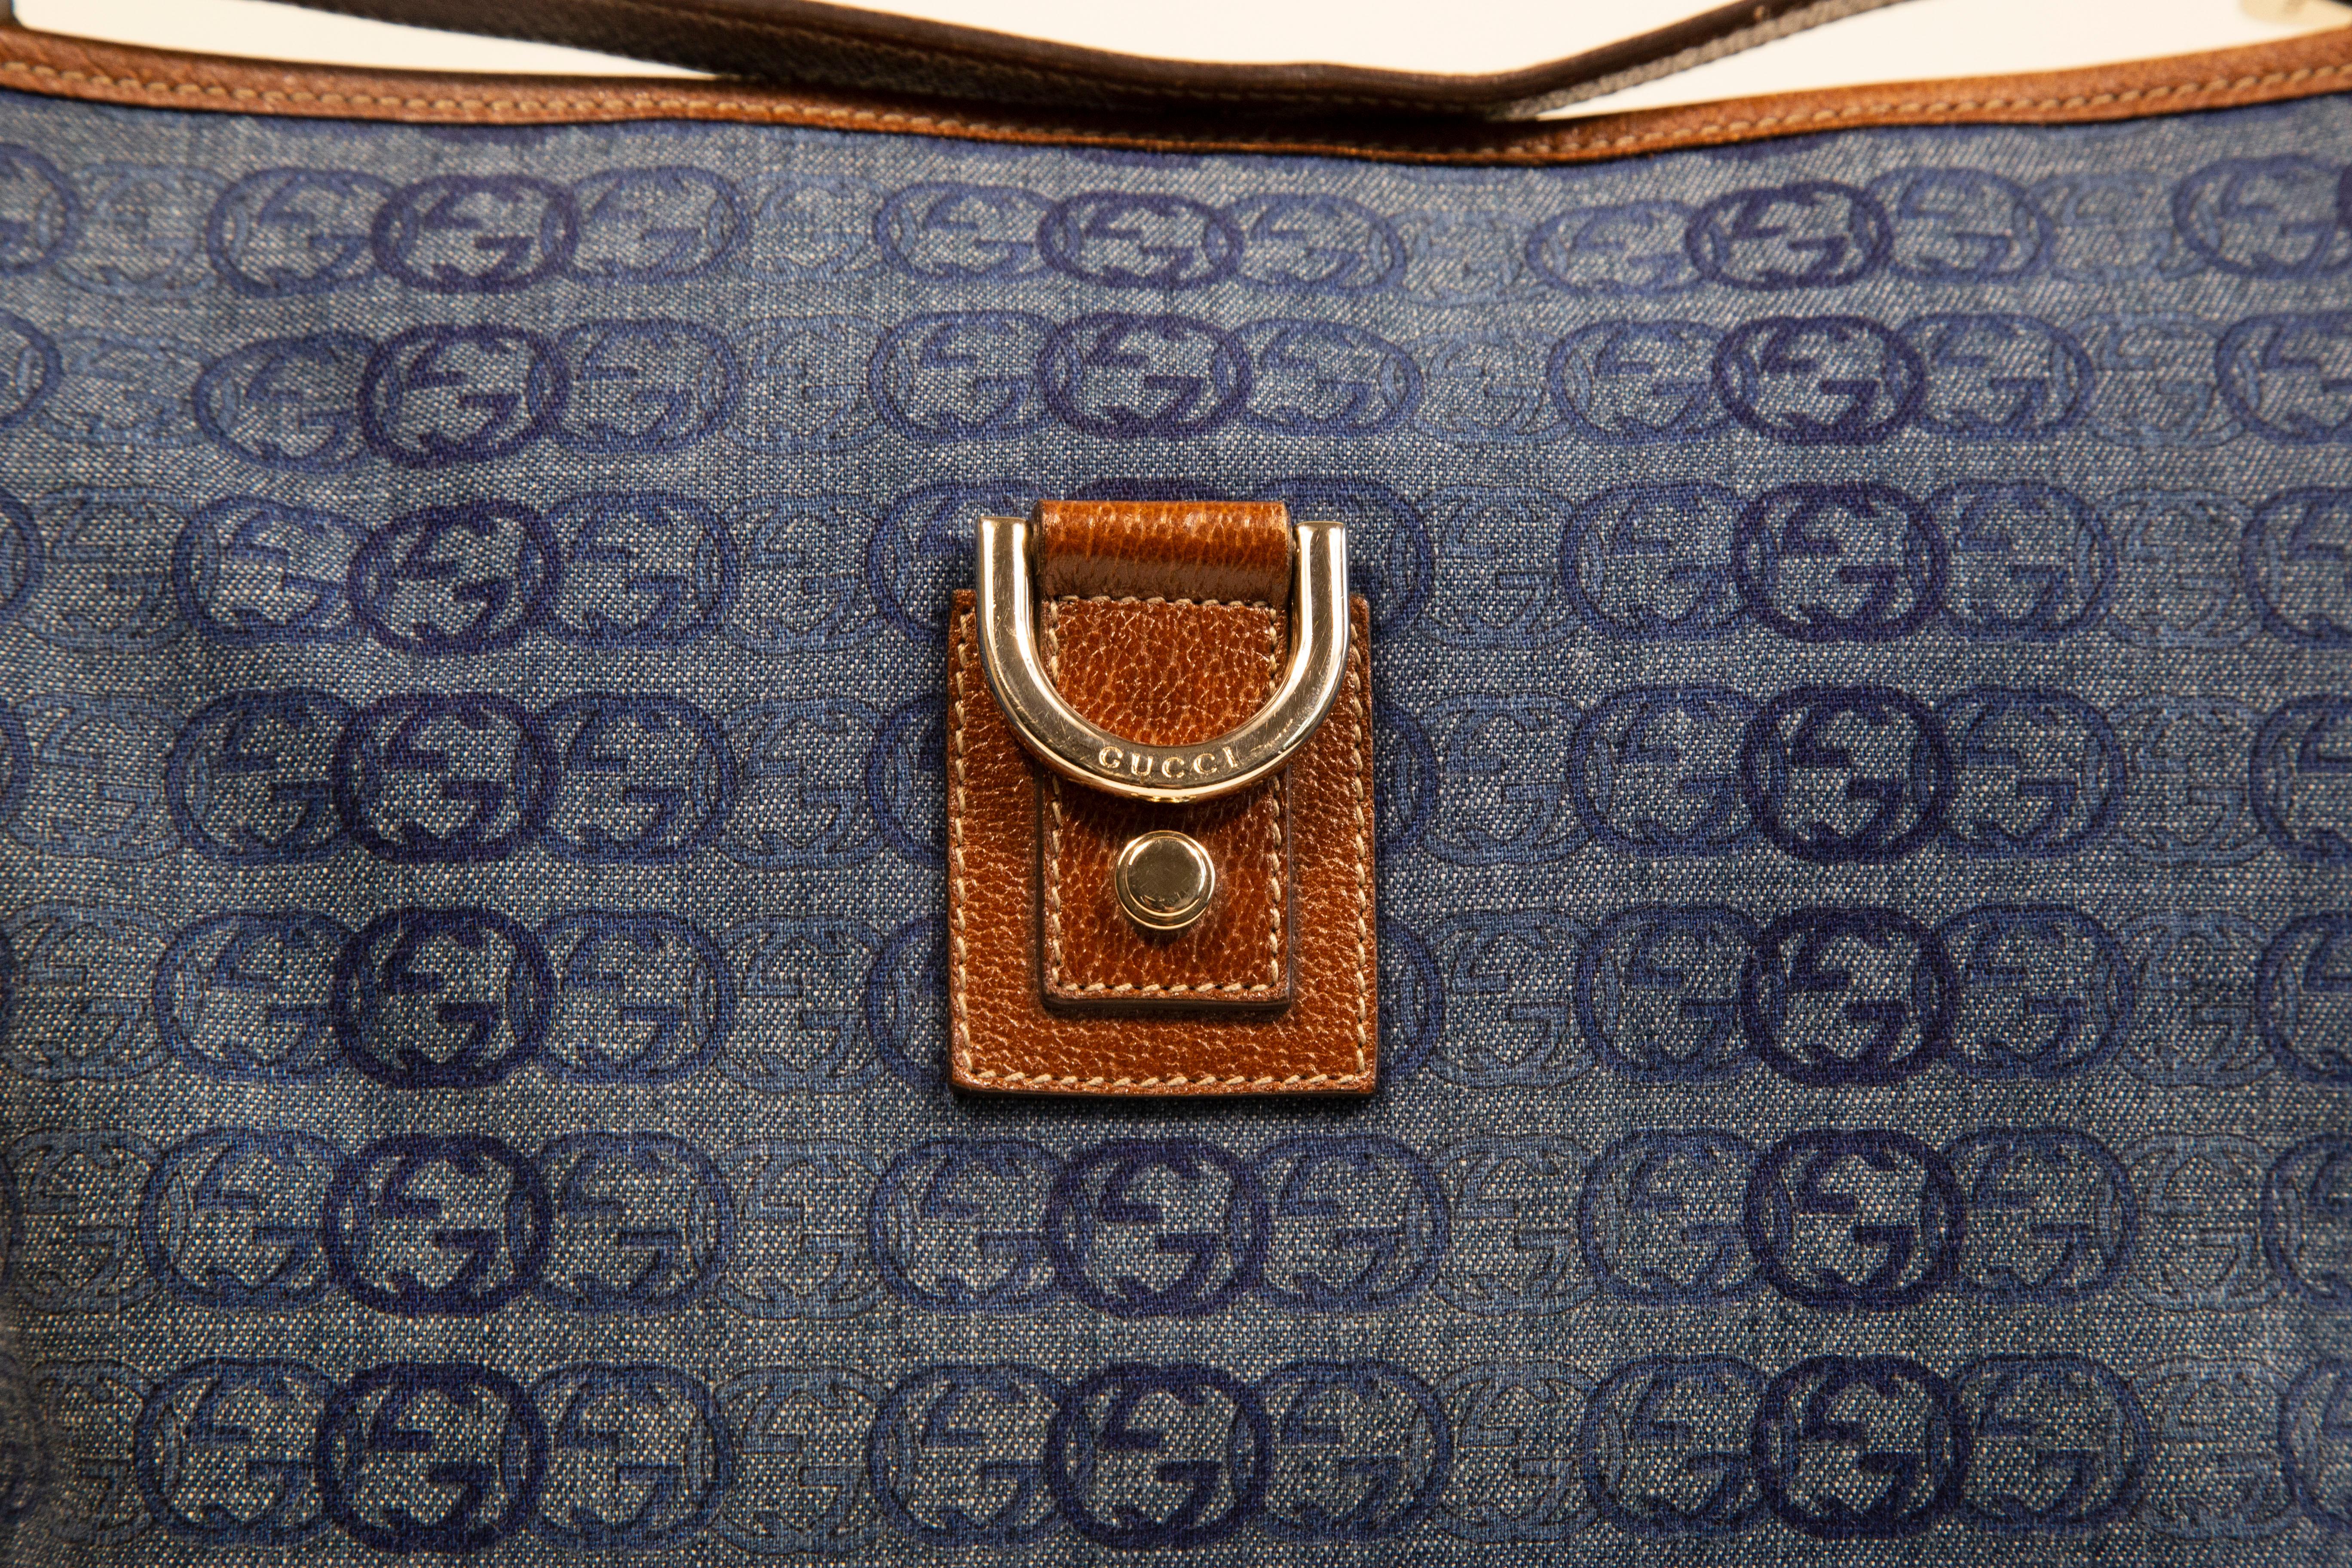 Eine Gucci Umhängetasche  aus blauem Canvas/Jeansstoff mit ineinandergreifendem GG-Muster. Die Tasche hat einen braunen Lederbesatz und goldfarbene Beschläge. Der Innenraum ist mit braunem Stoff ausgekleidet und bietet neben dem Hauptfach eine